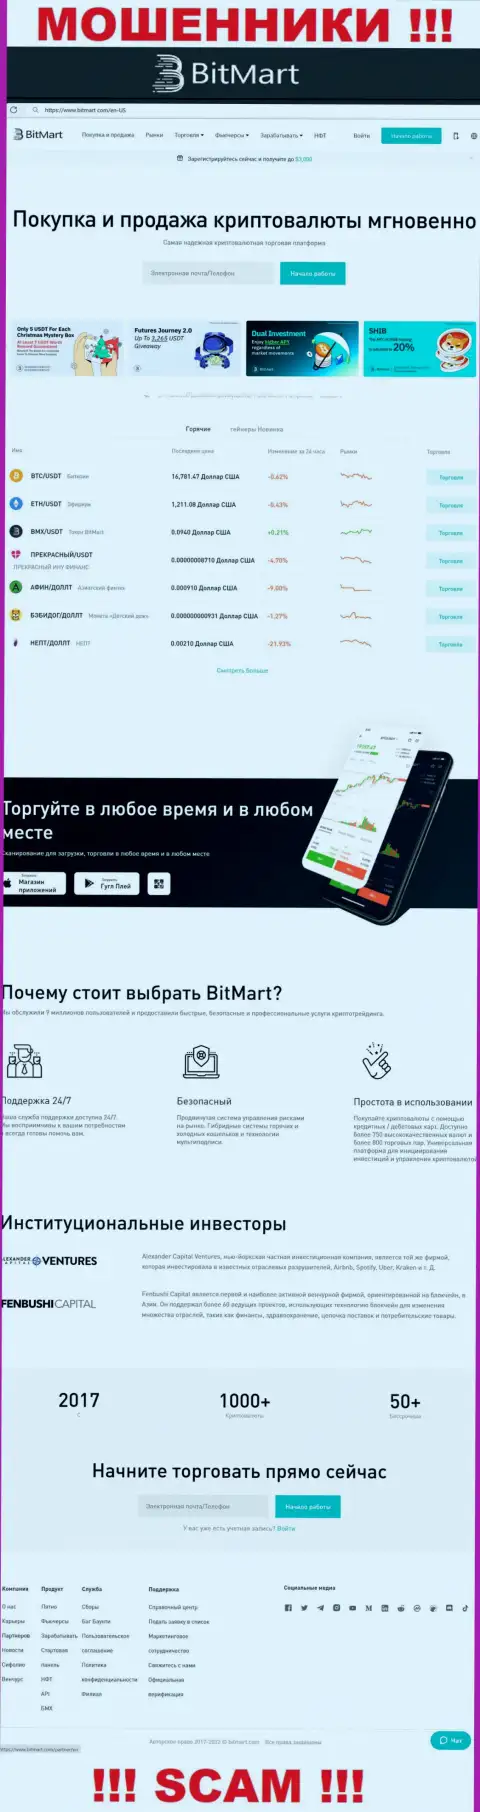 Внешний вид официального сервиса жульнической организации BitMart